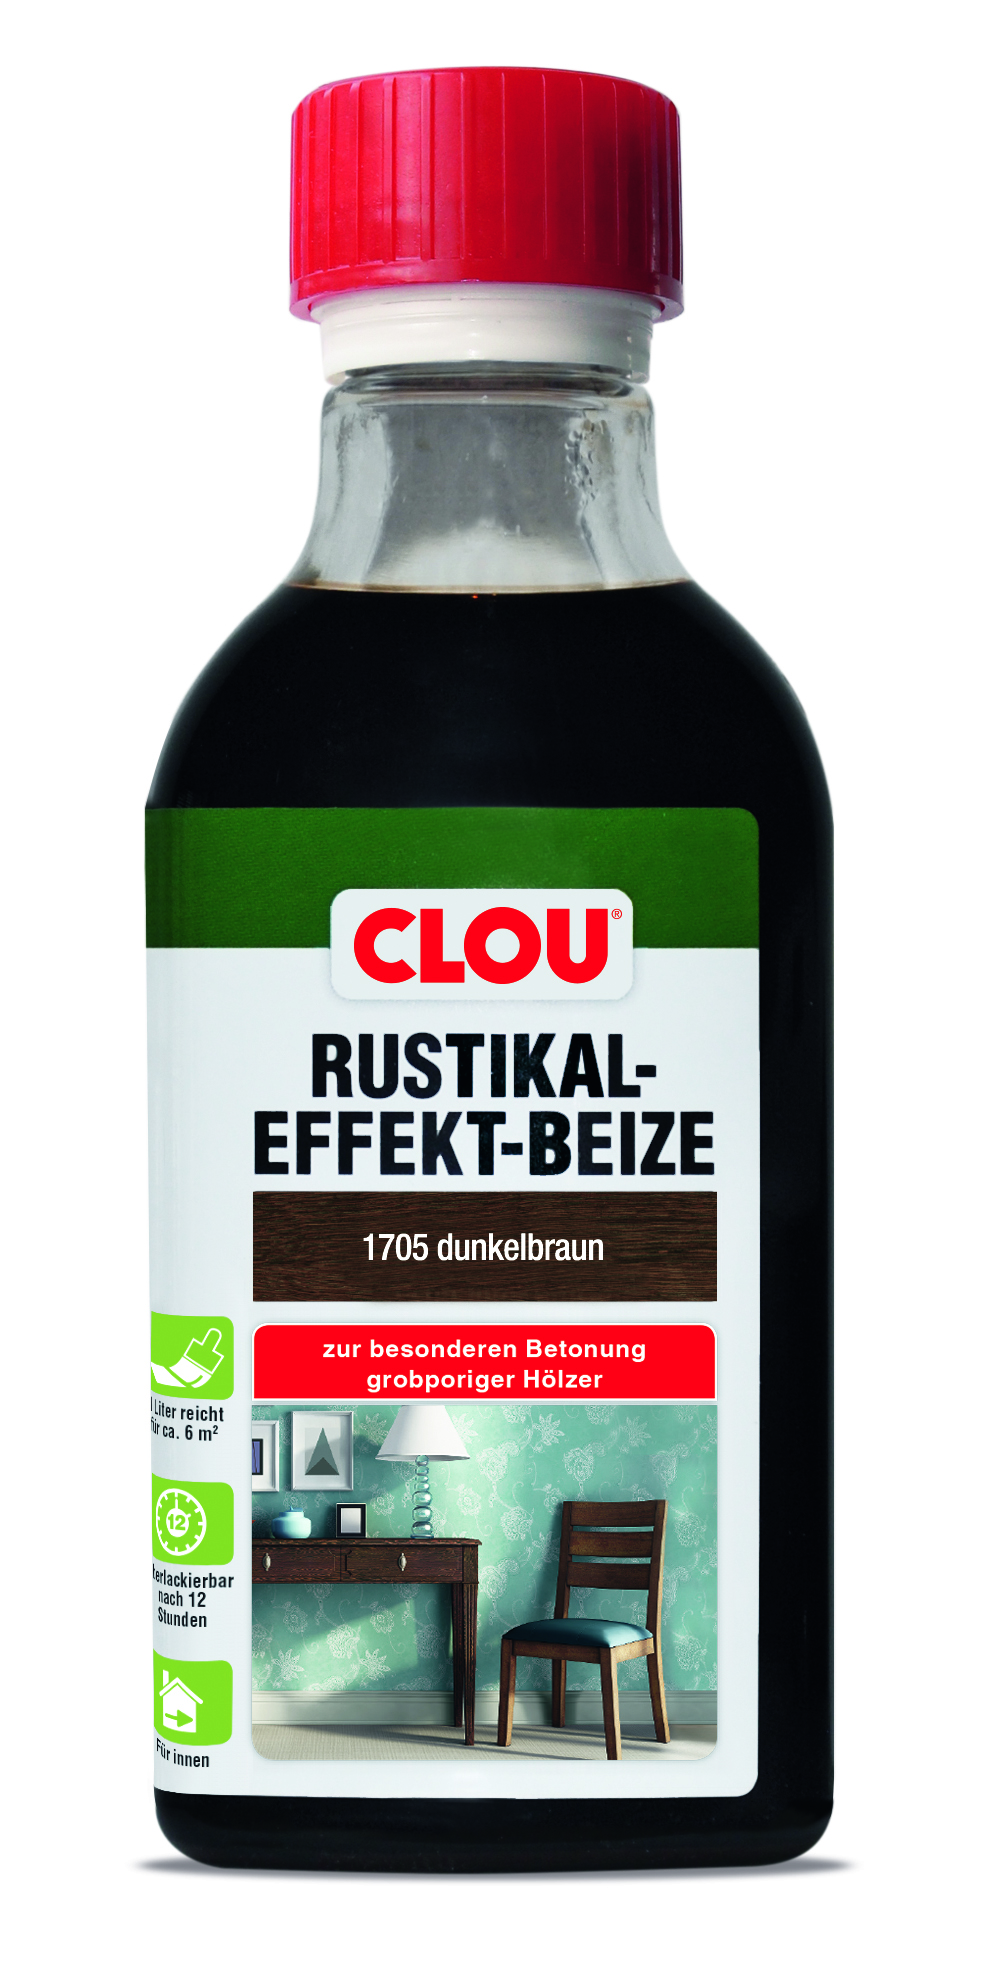 CLOU Rustikal-Effekt-Beize B4, 250 ml - 1705 Dunkelbraun